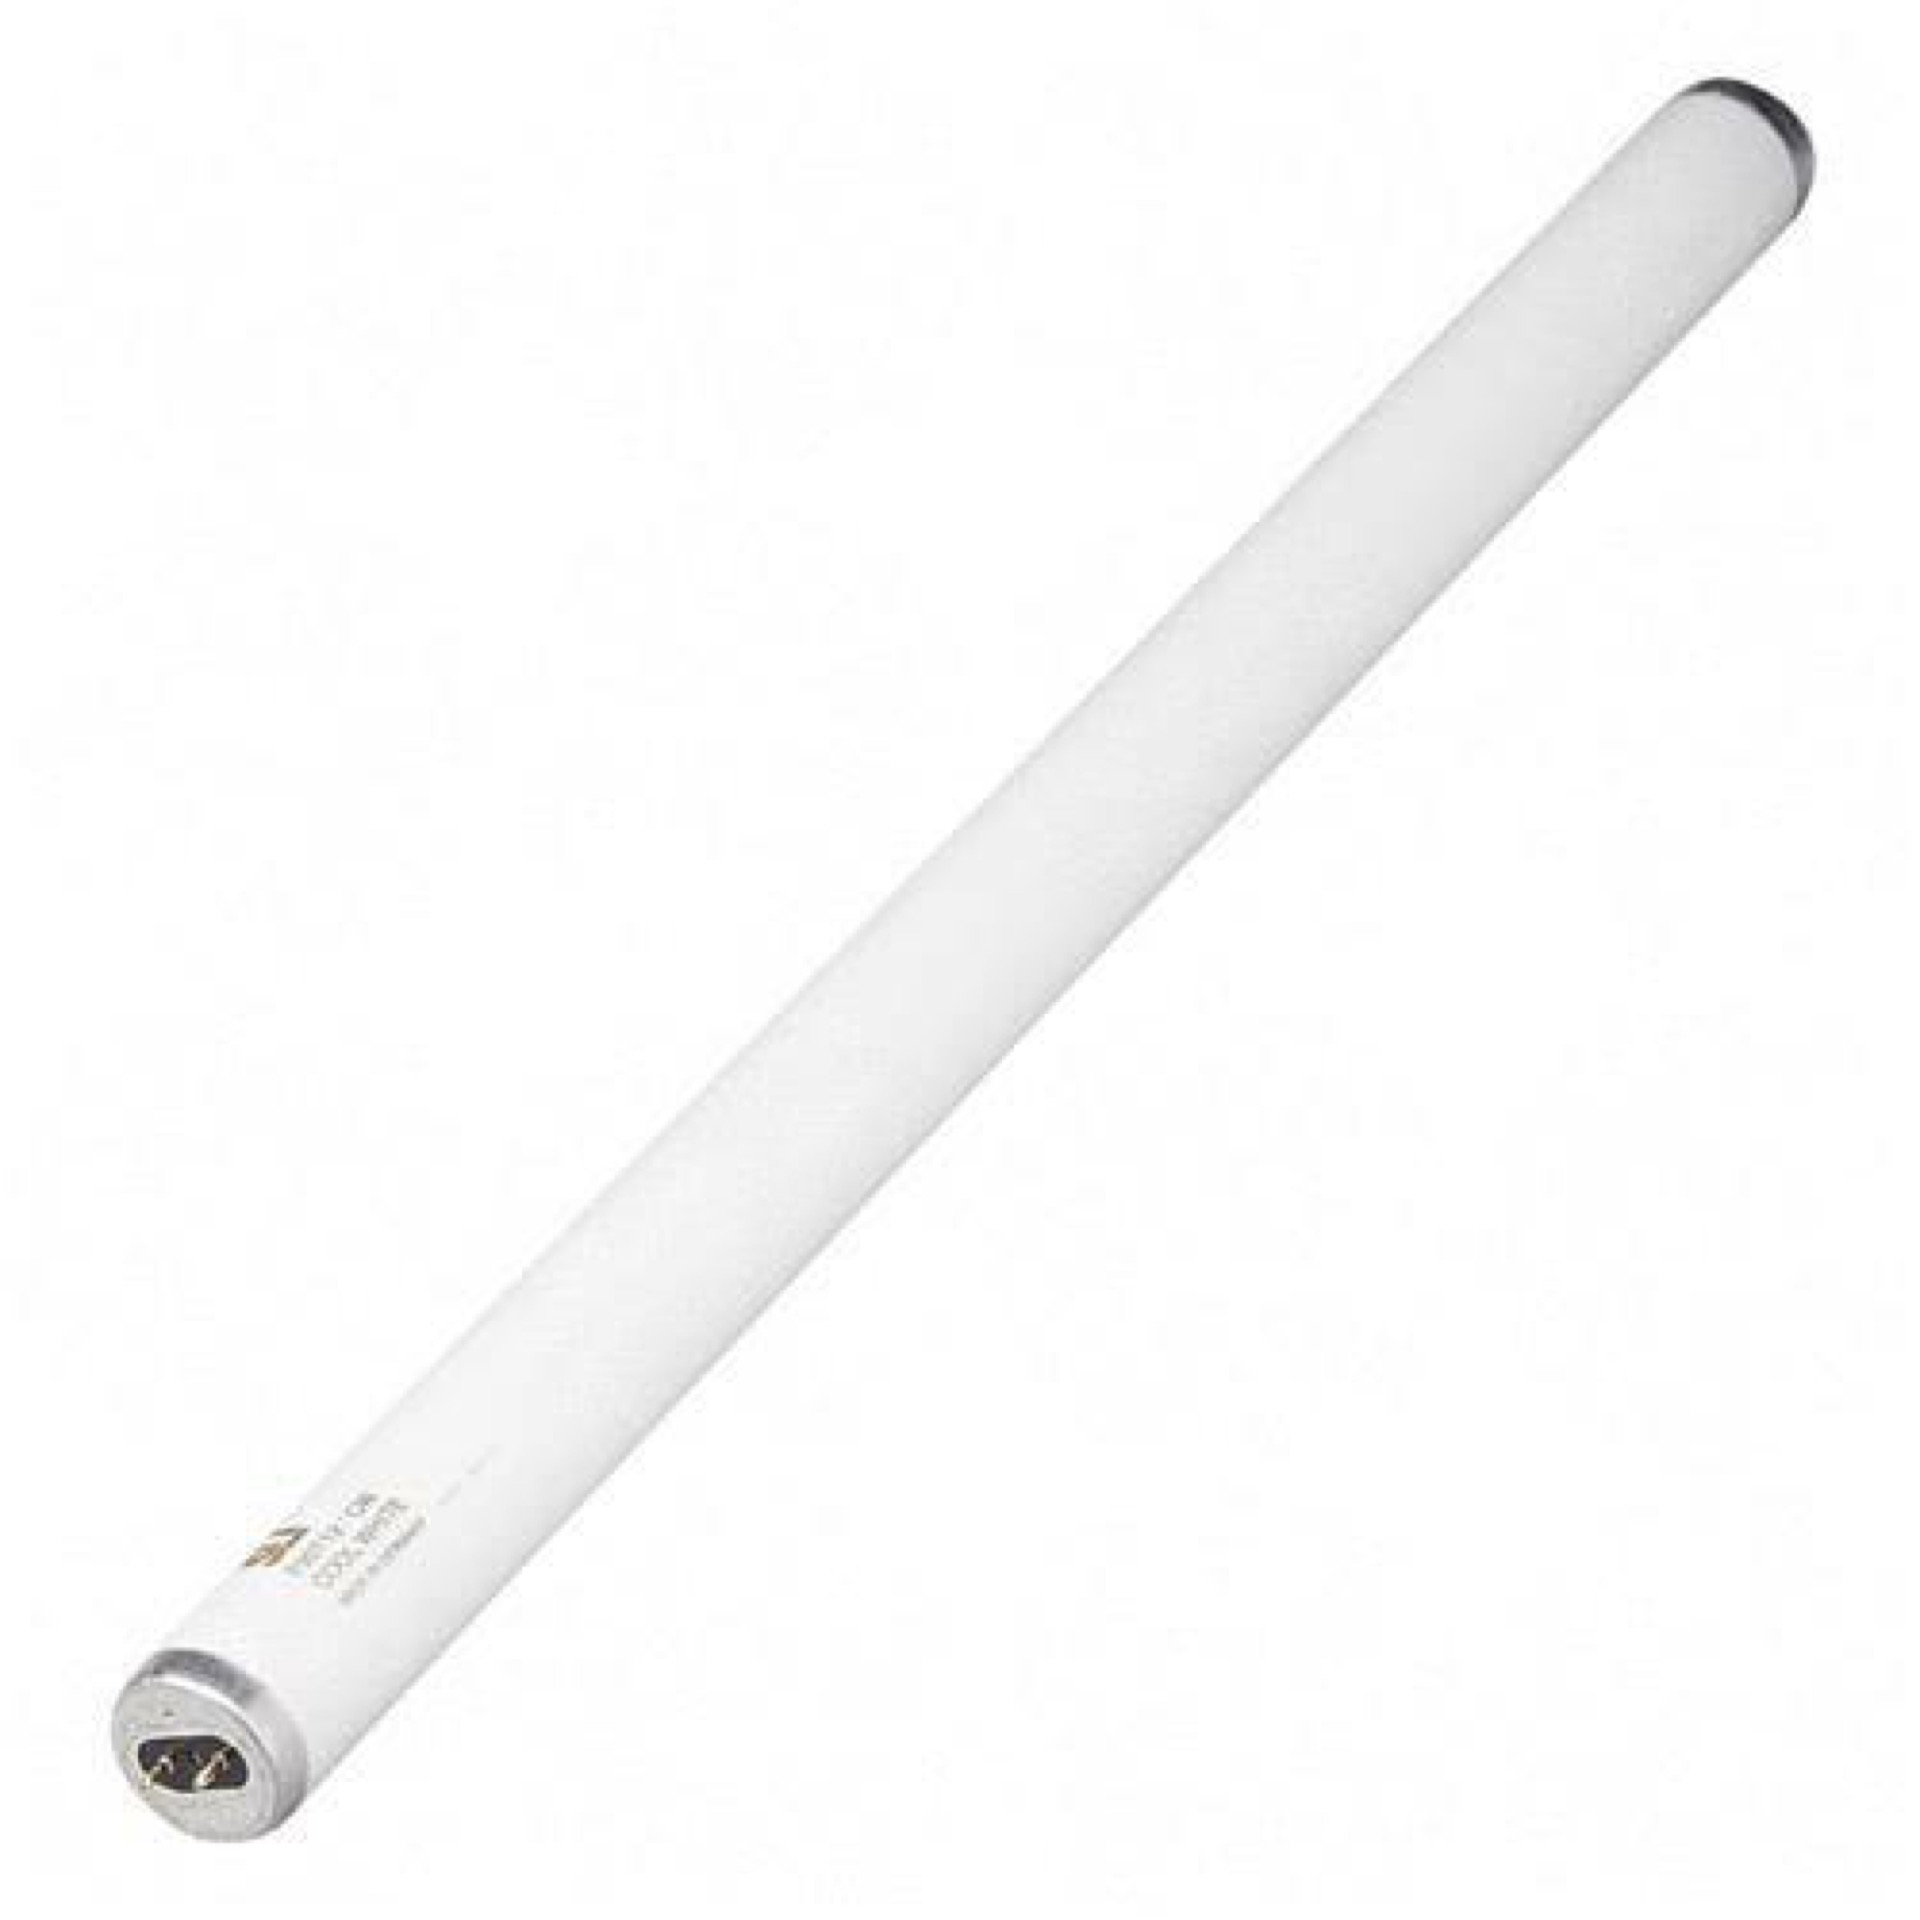 20-watts-24-long-fluorescent-tube-only-industrial-uv-light-img-1-1.jpg.